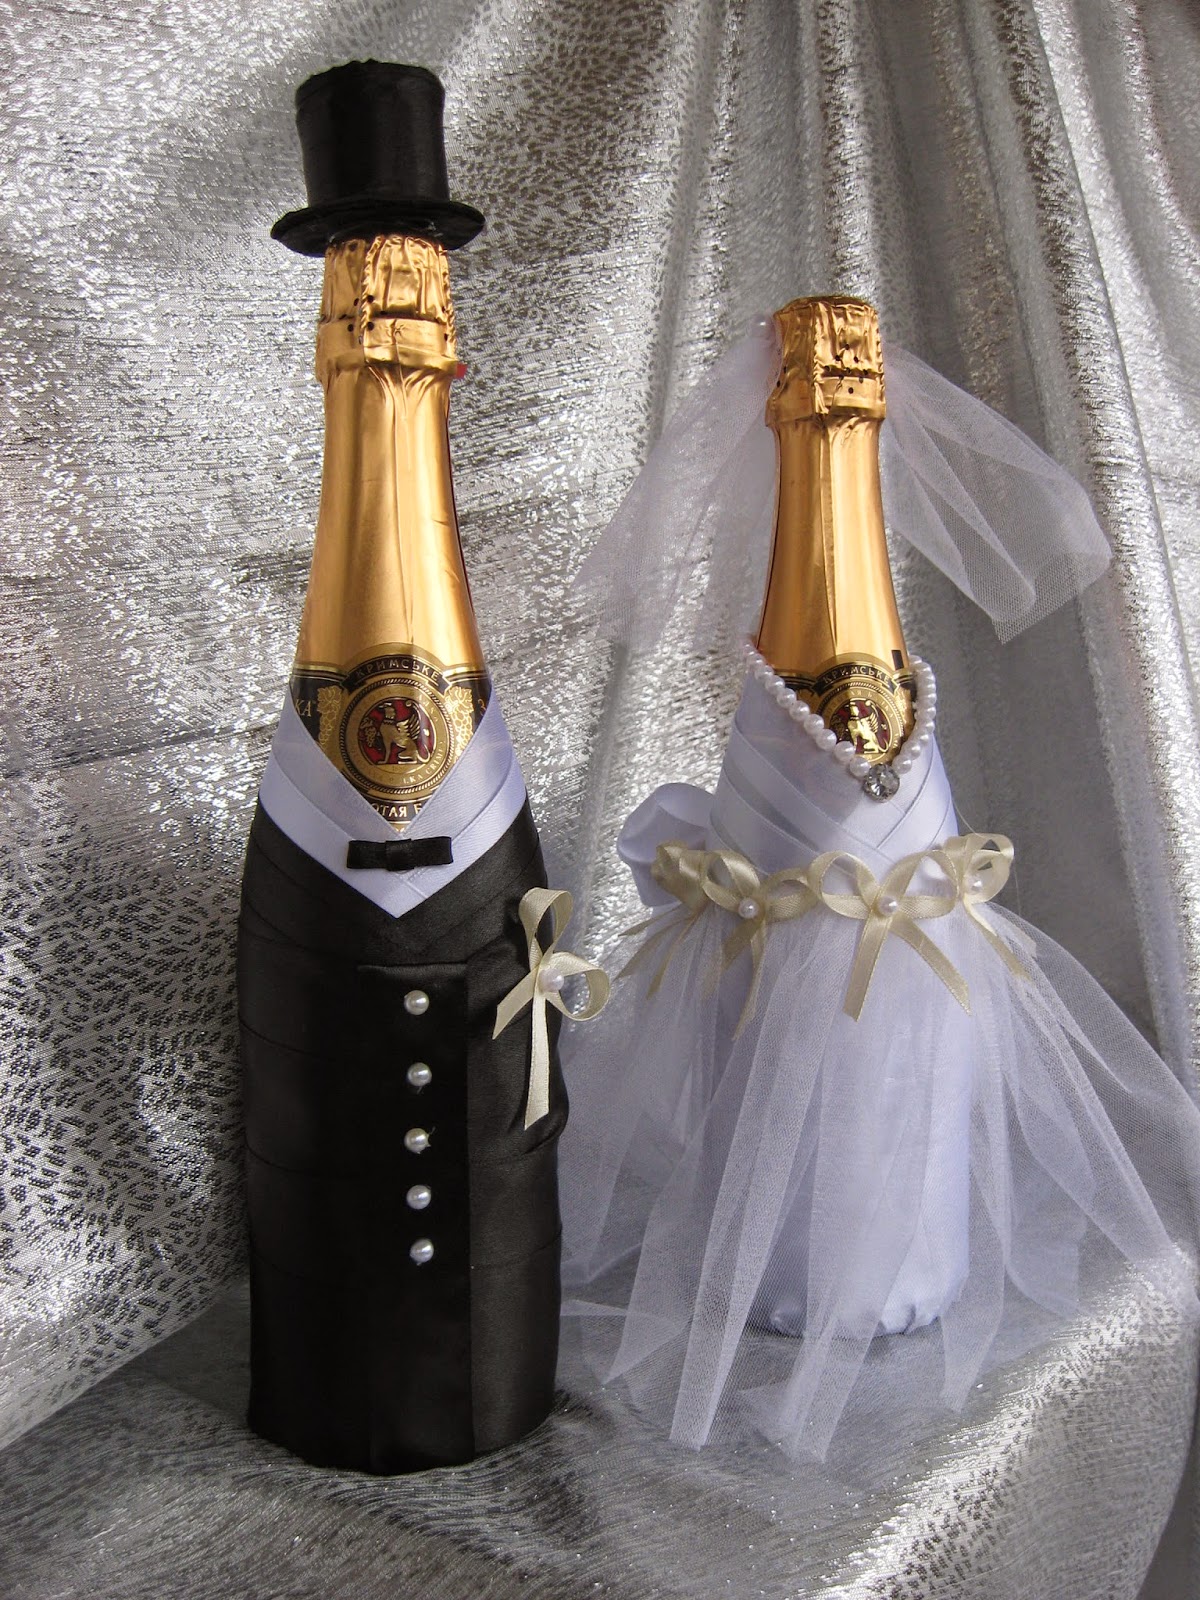 Шампанское невеста. Бутылки шампанского на свадьбу. Украшение свадебных бутылок шампанского. Шампанское на свадьбу для жениха и невесты. Бутылка шампанского жених.